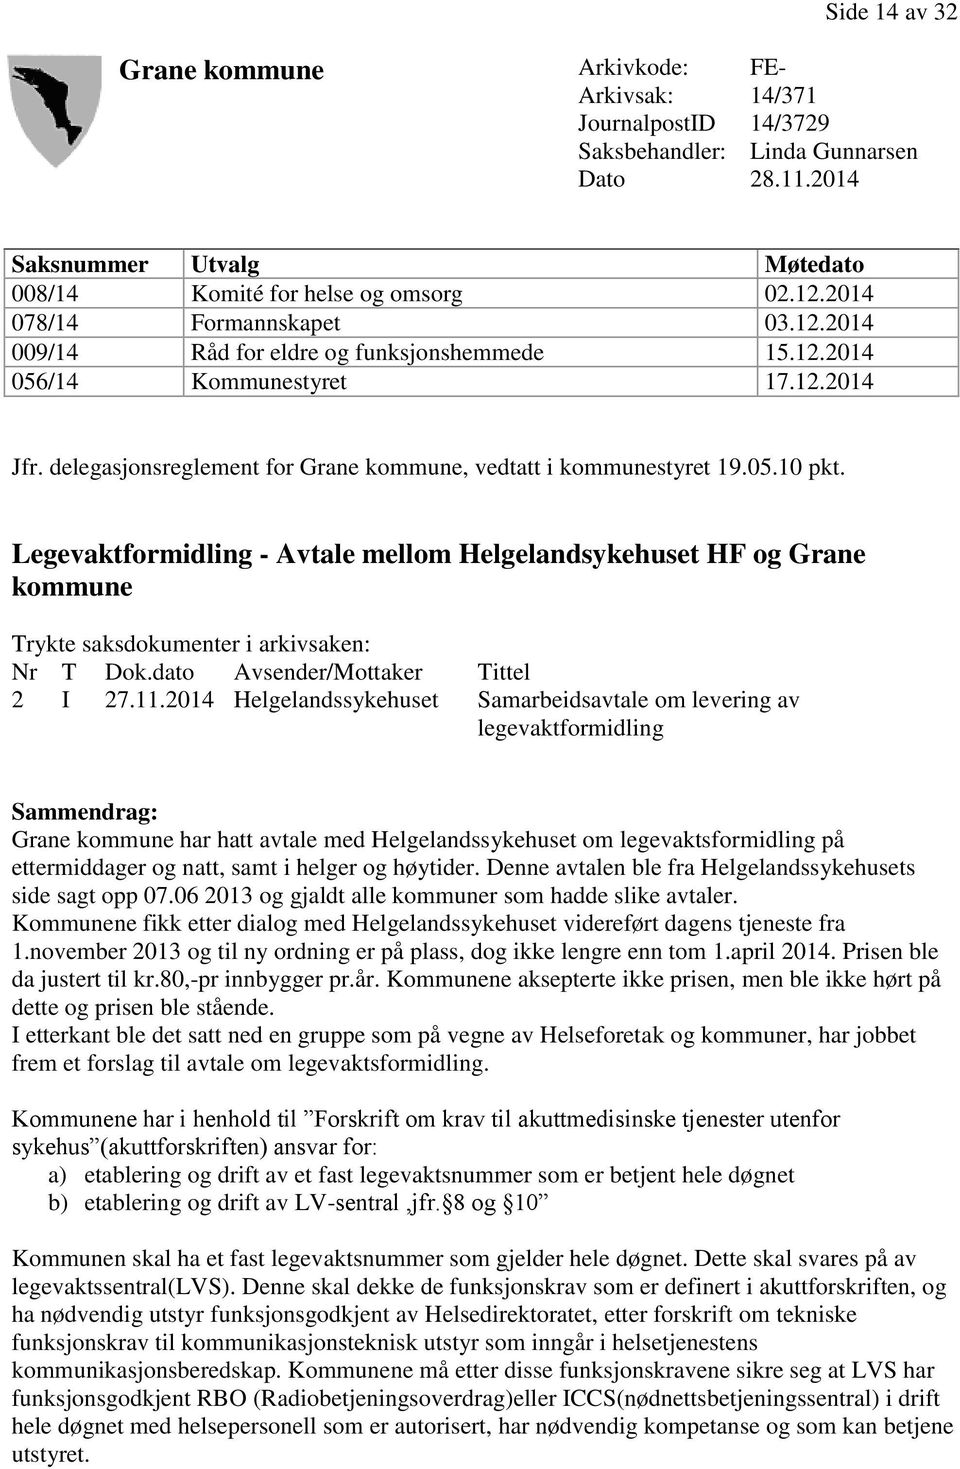 Legevaktformidling - Avtale mellom Helgelandsykehuset HF og Grane kommune Trykte saksdokumenter i arkivsaken: Nr T Dok.dato Avsender/Mottaker Tittel 2 I 27.11.